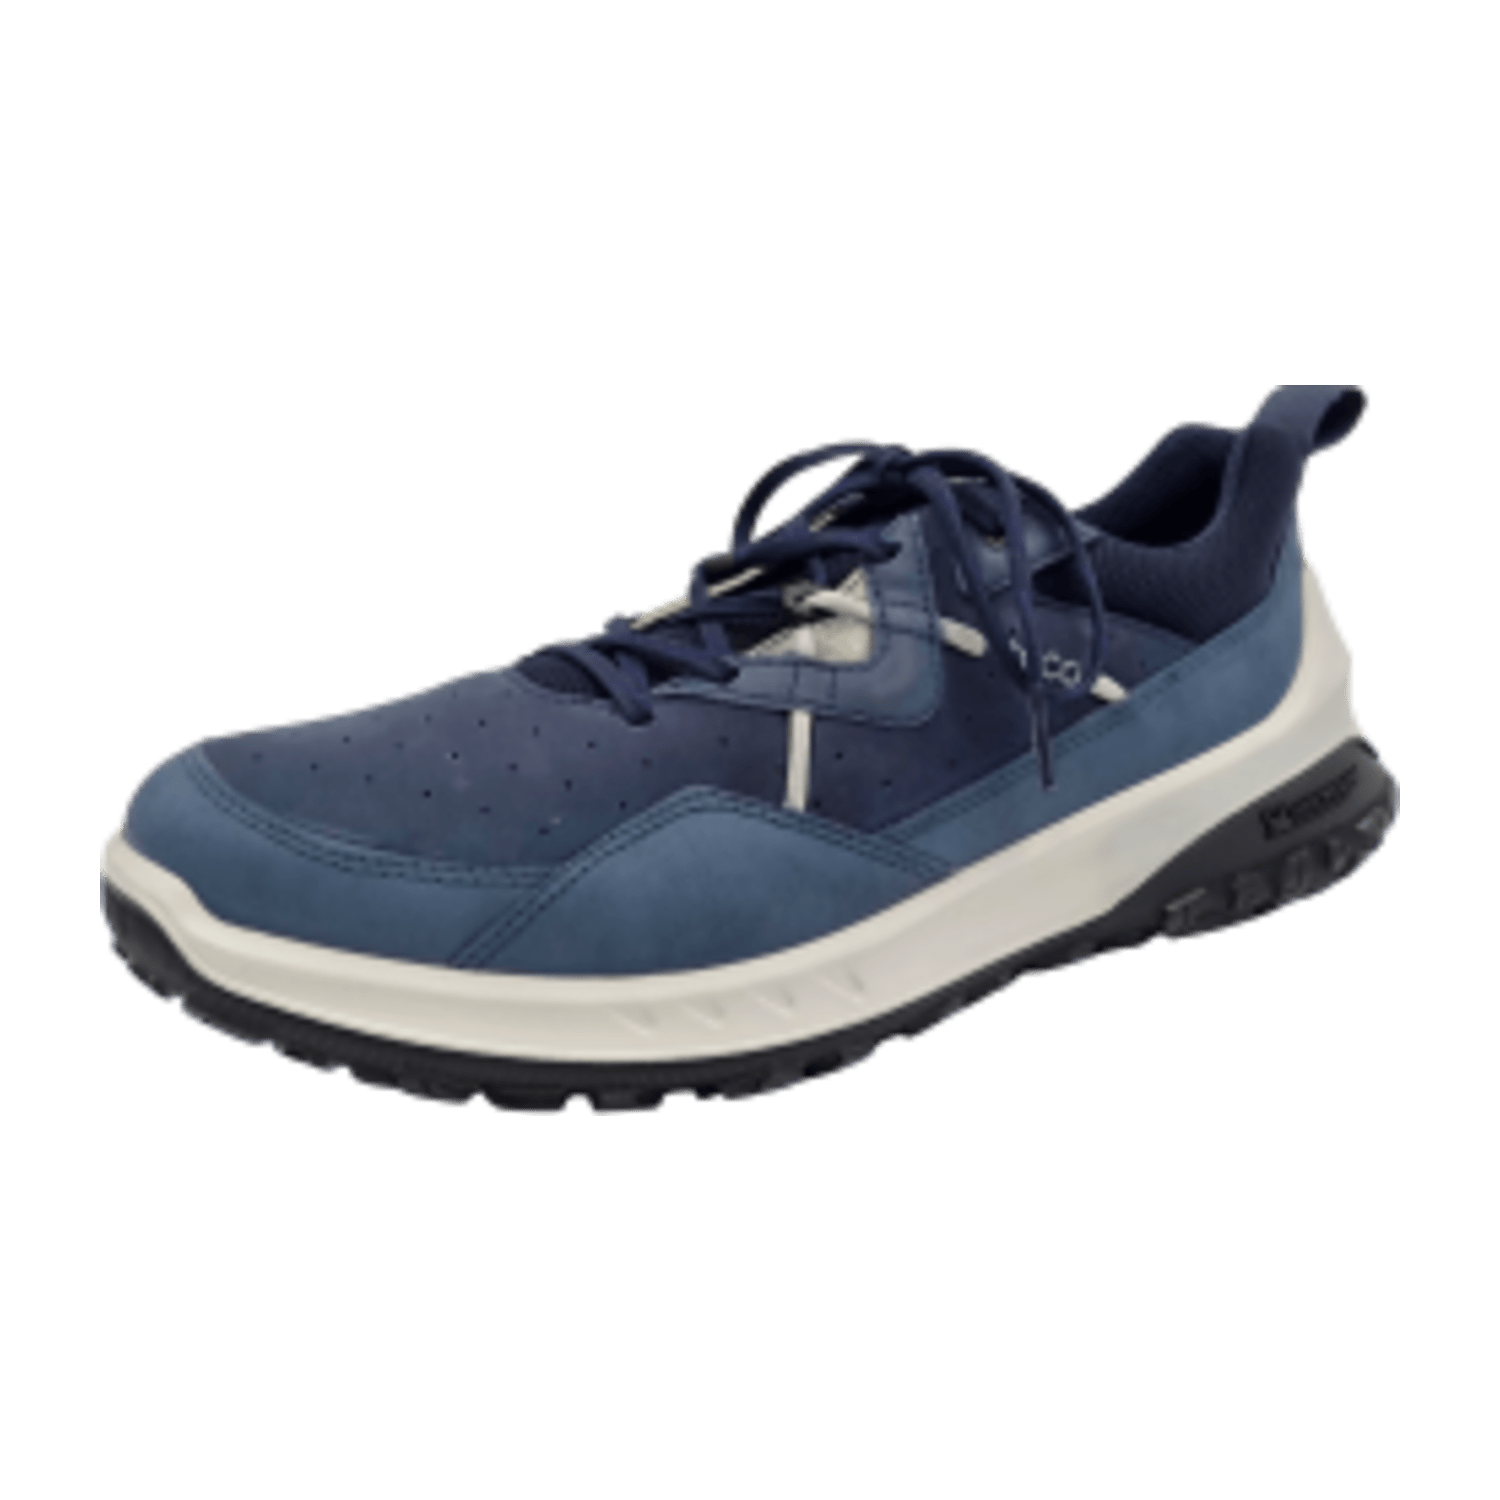 Ecco Ult-Trn Schuhe blau marine 824263